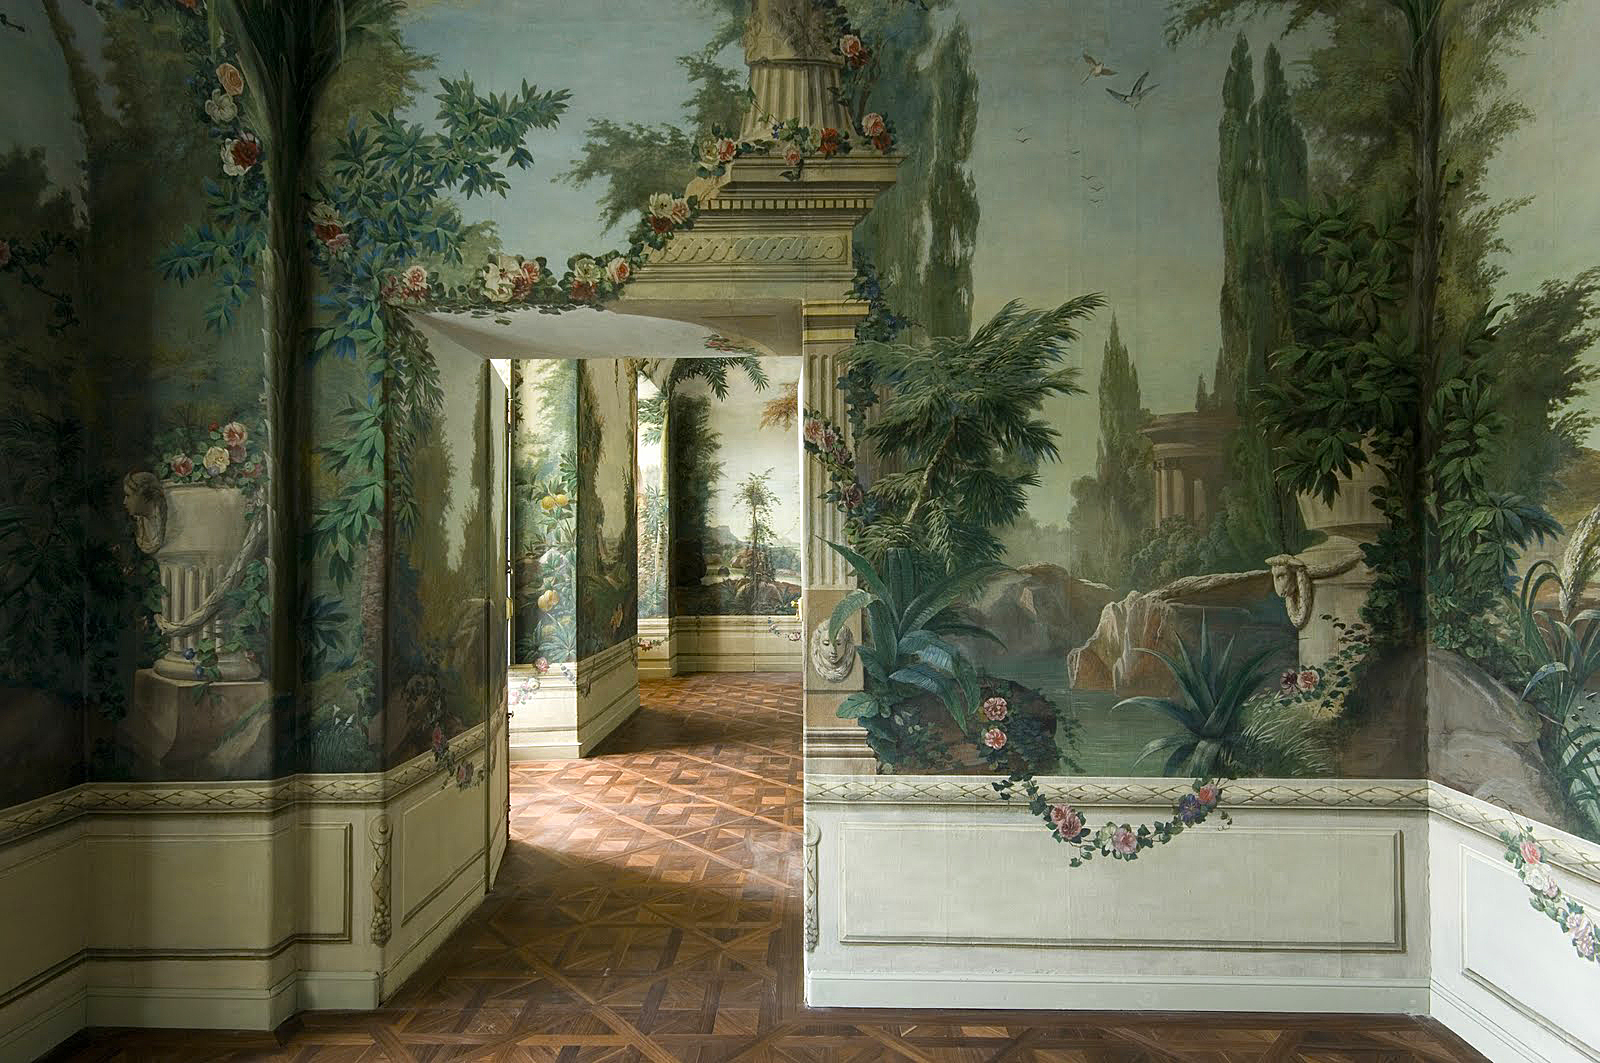 Nstnn malby v pokojch na zmku Schnbrunn ve Vdni